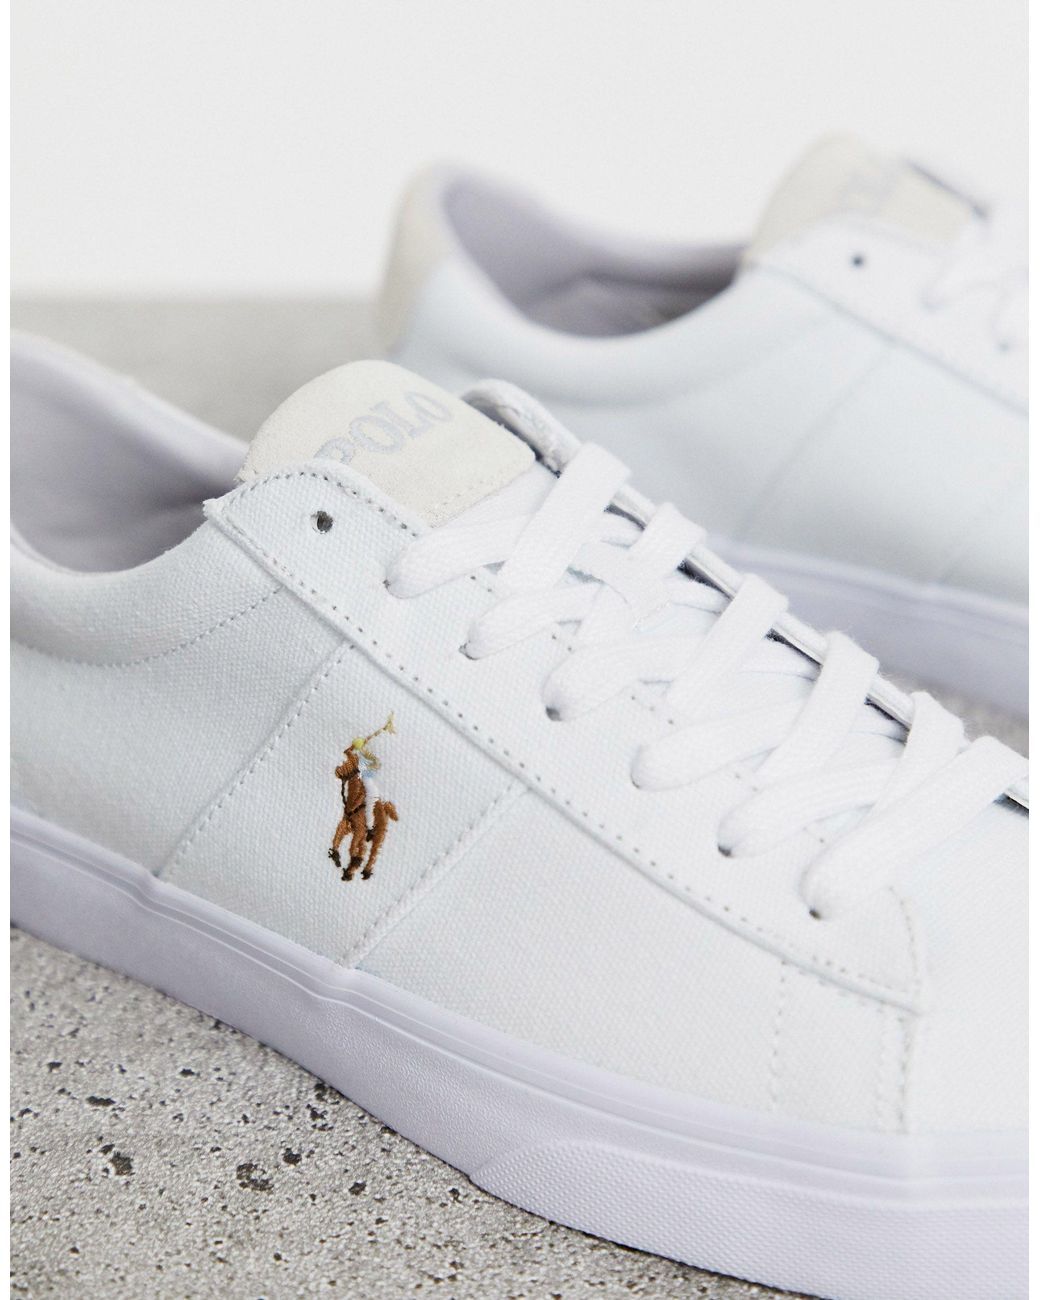 Sayer - Sneakers di tela bianche con logo multiPolo Ralph Lauren in Tela da  Uomo colore Bianco - 69% di sconto | Lyst